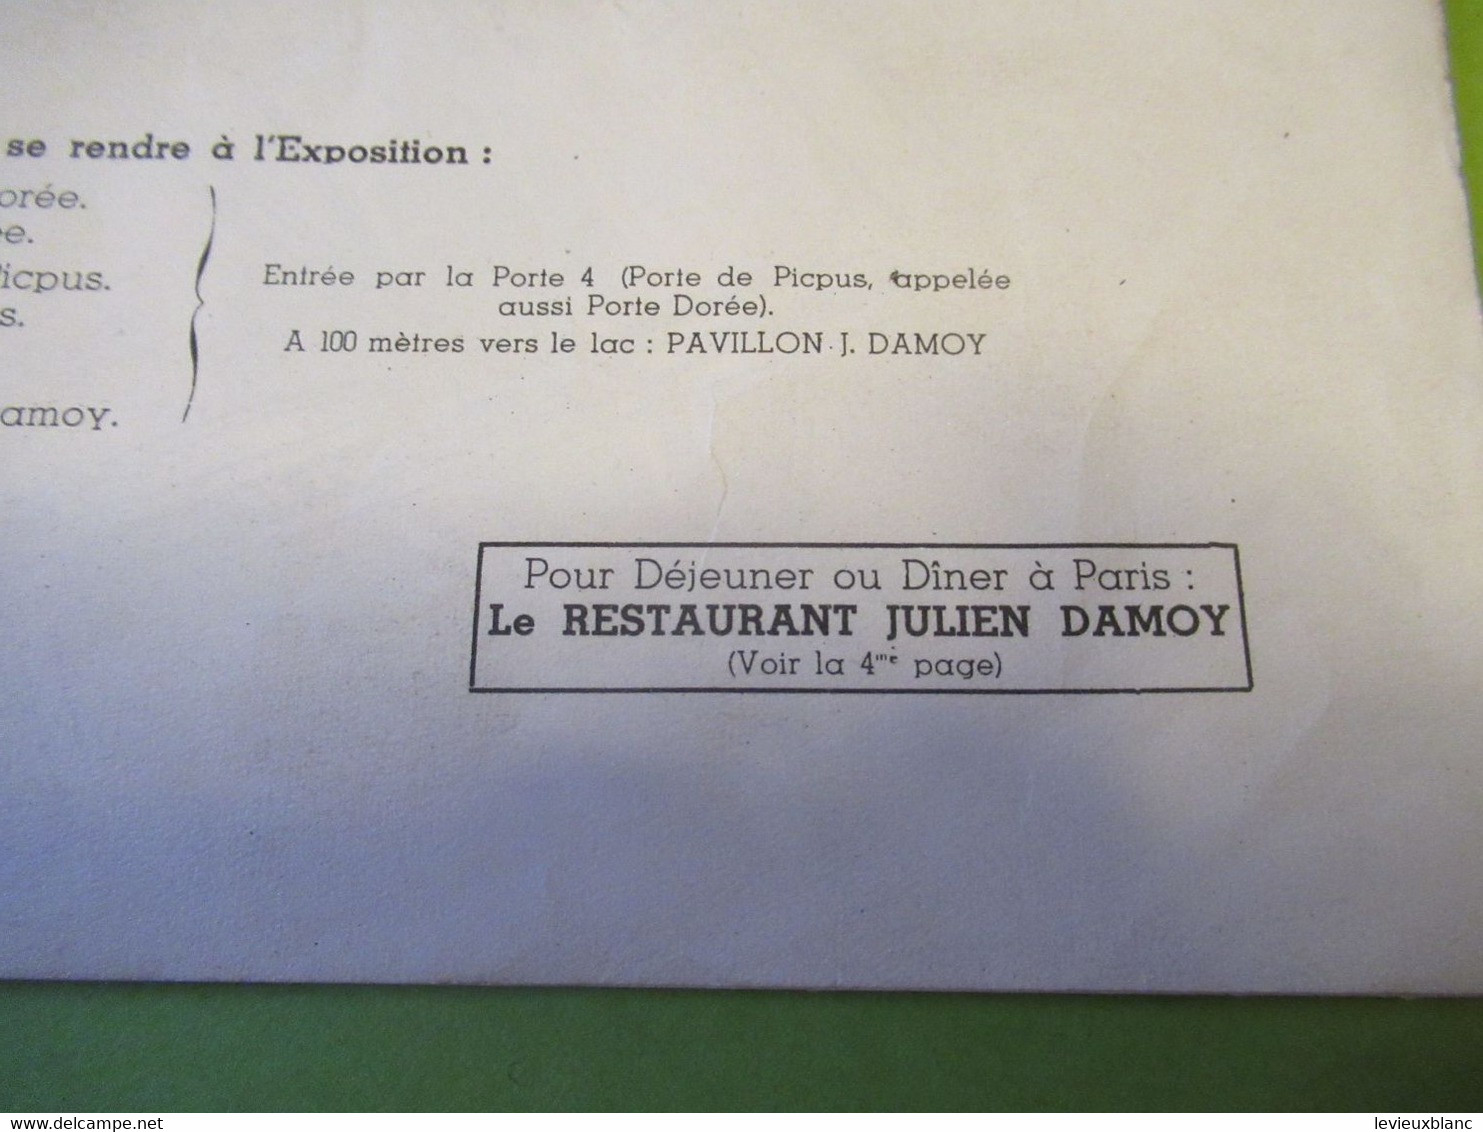 Exposition Coloniale/ Pavillon De Dégustation Des Produits JULIEN DAMOY/ Grand Plan Global De L'Exposition/1931   VPN345 - Café & Thé